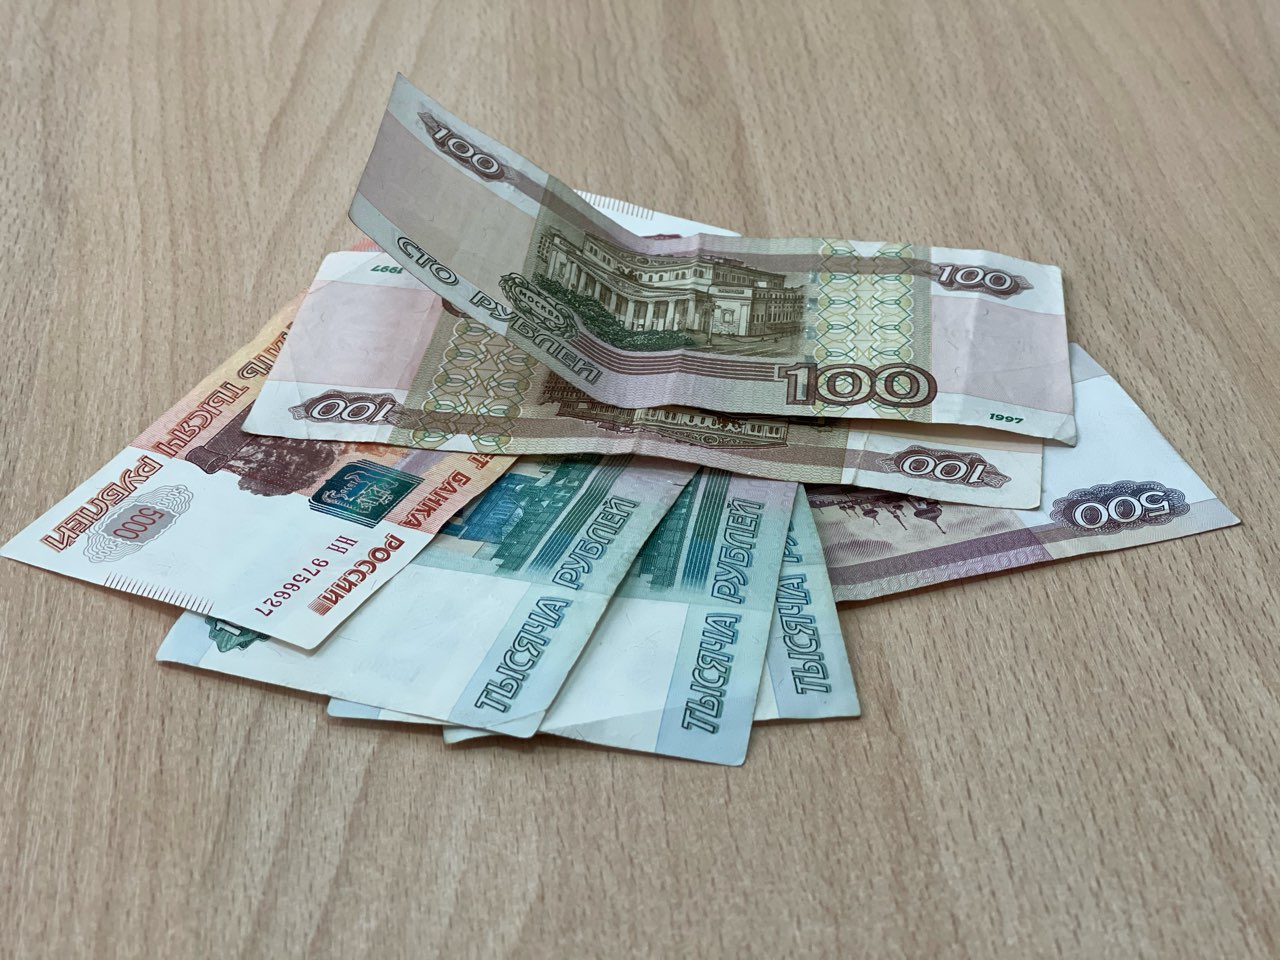 6 млрд направят в бюджет Нижнего Новгорода из межбюджетных трансферов  - фото 1